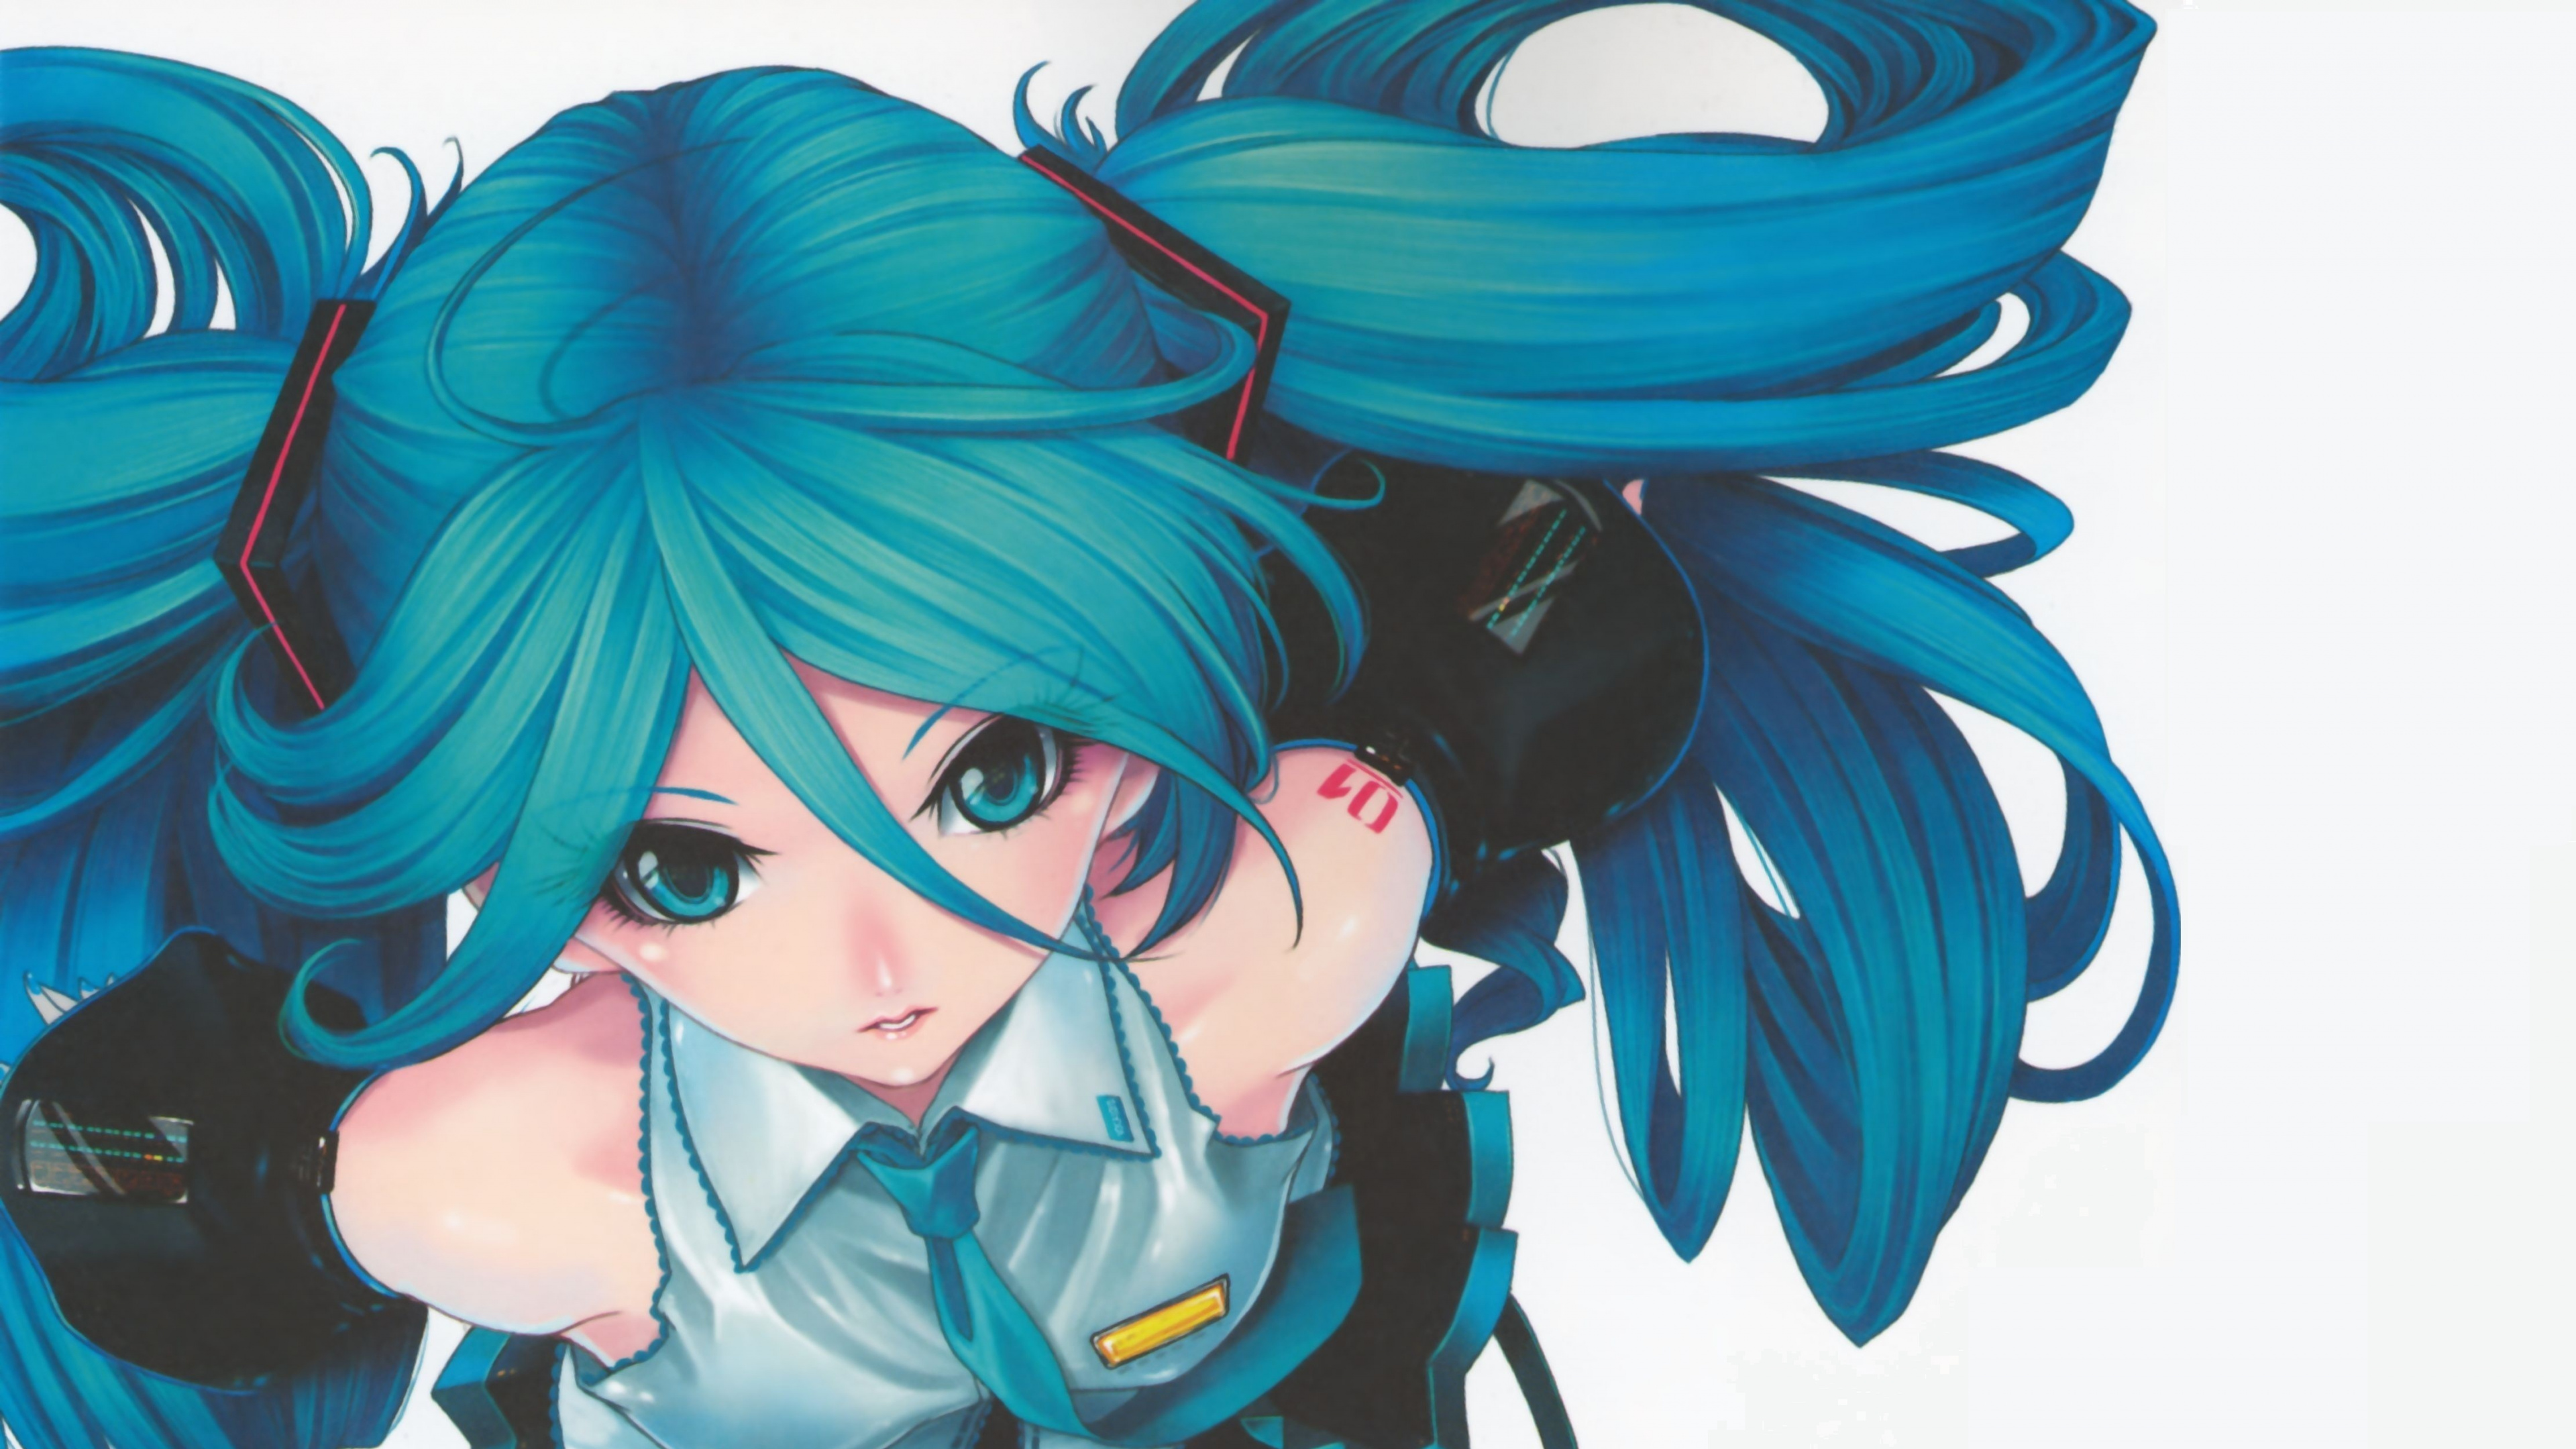 Blauhaariger Männlicher Anime-Charakter. Wallpaper in 3840x2160 Resolution